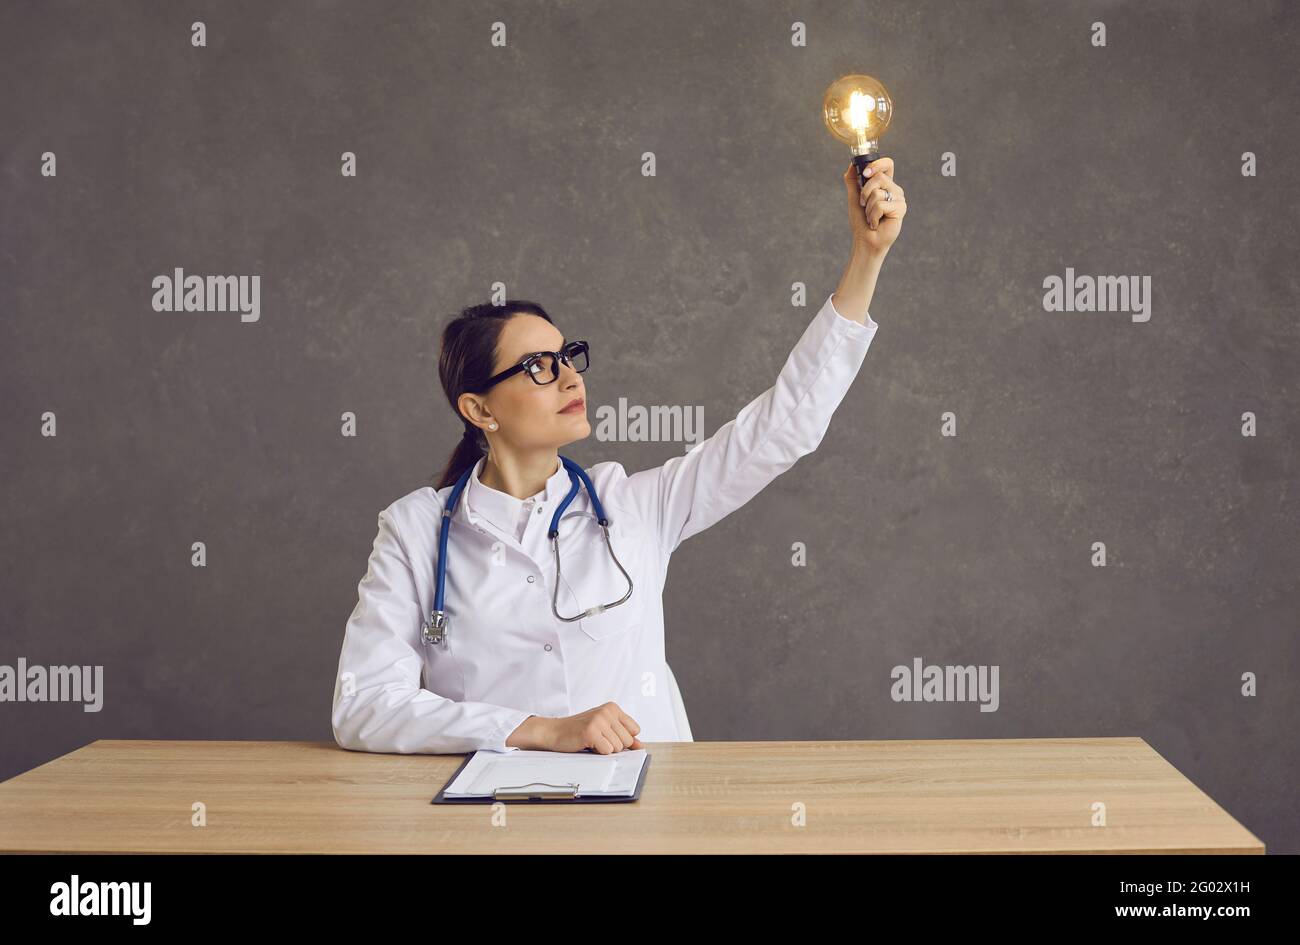 Medico o studente di medicina seduto alla scrivania e tenendo in mano la luce lampadina come concetto di idea innovativa Foto Stock